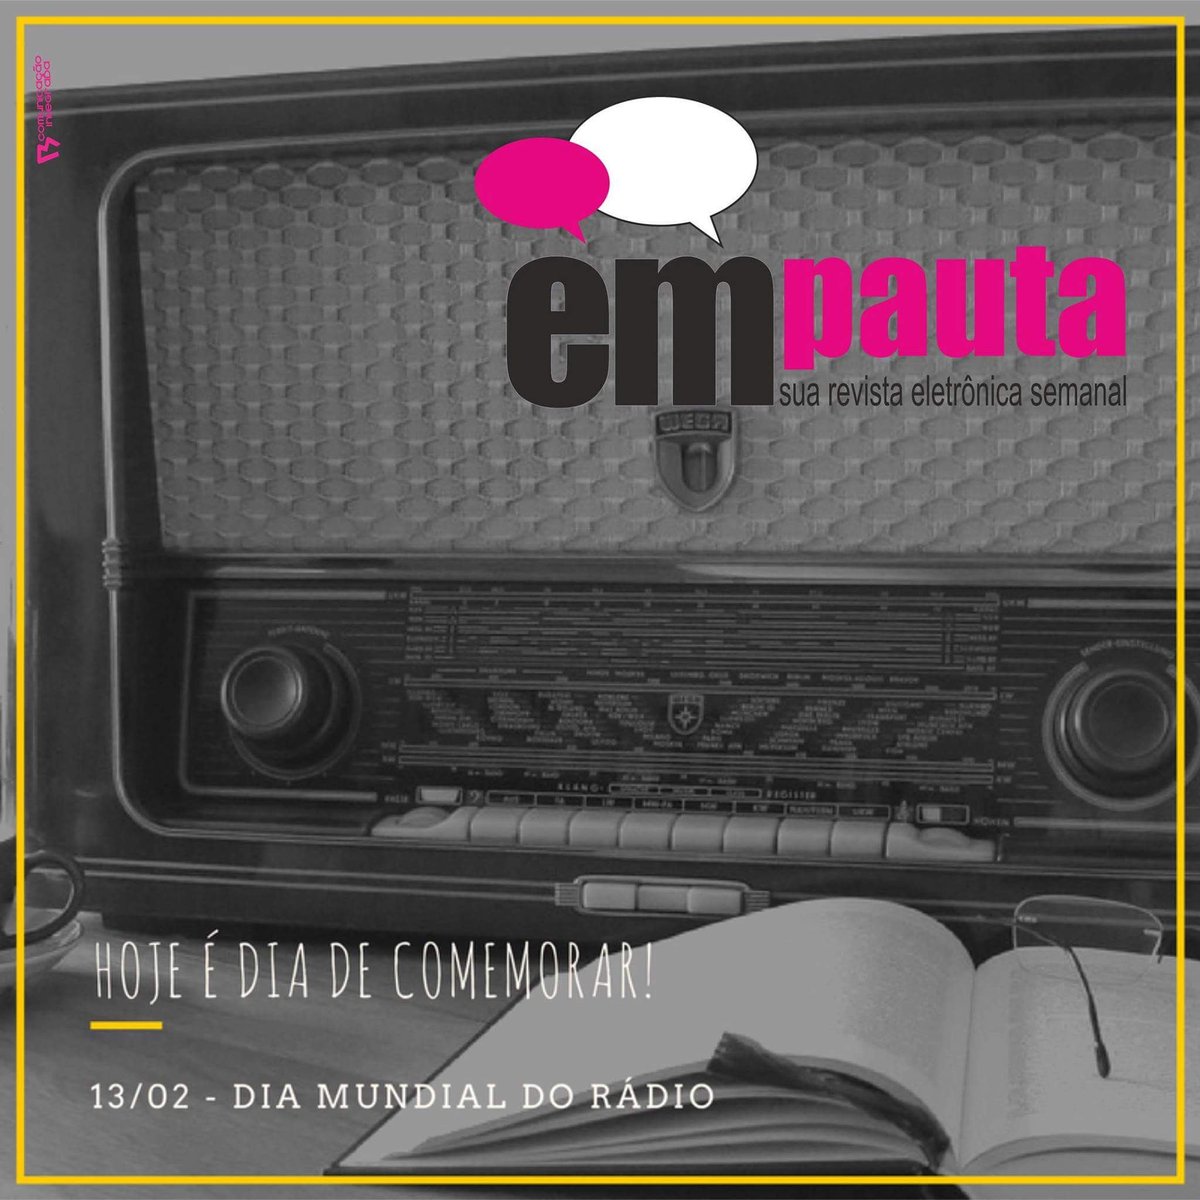 Hoje é dia de Festa!
#13deFevereiro #DiaMundialdoRádio #RádioJornalismo 
#ProgramaEmPauta #AmamosRádio #Rádio